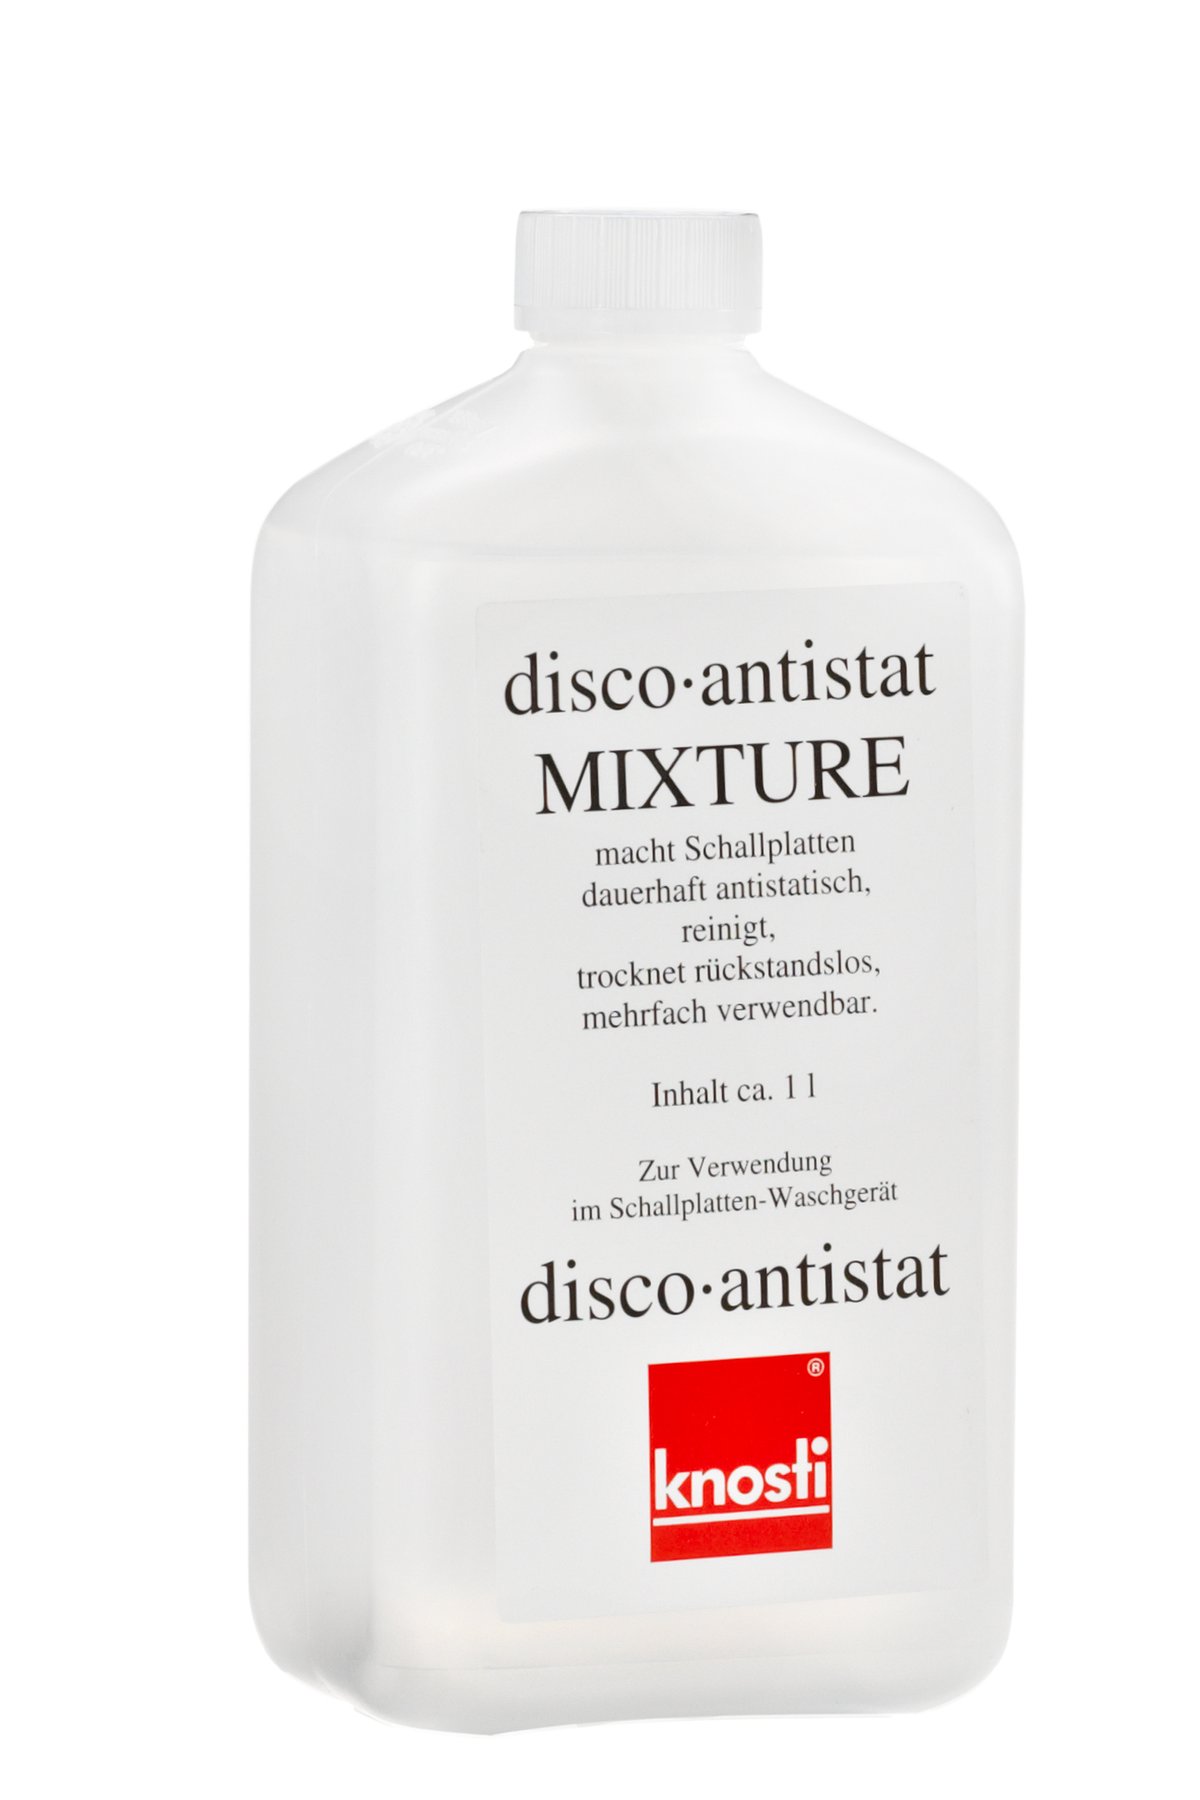 Рідина для миття вінілових грамплатівок KNOSTI Disco-Antistatic Mixture (1 лiтр), art. 3509